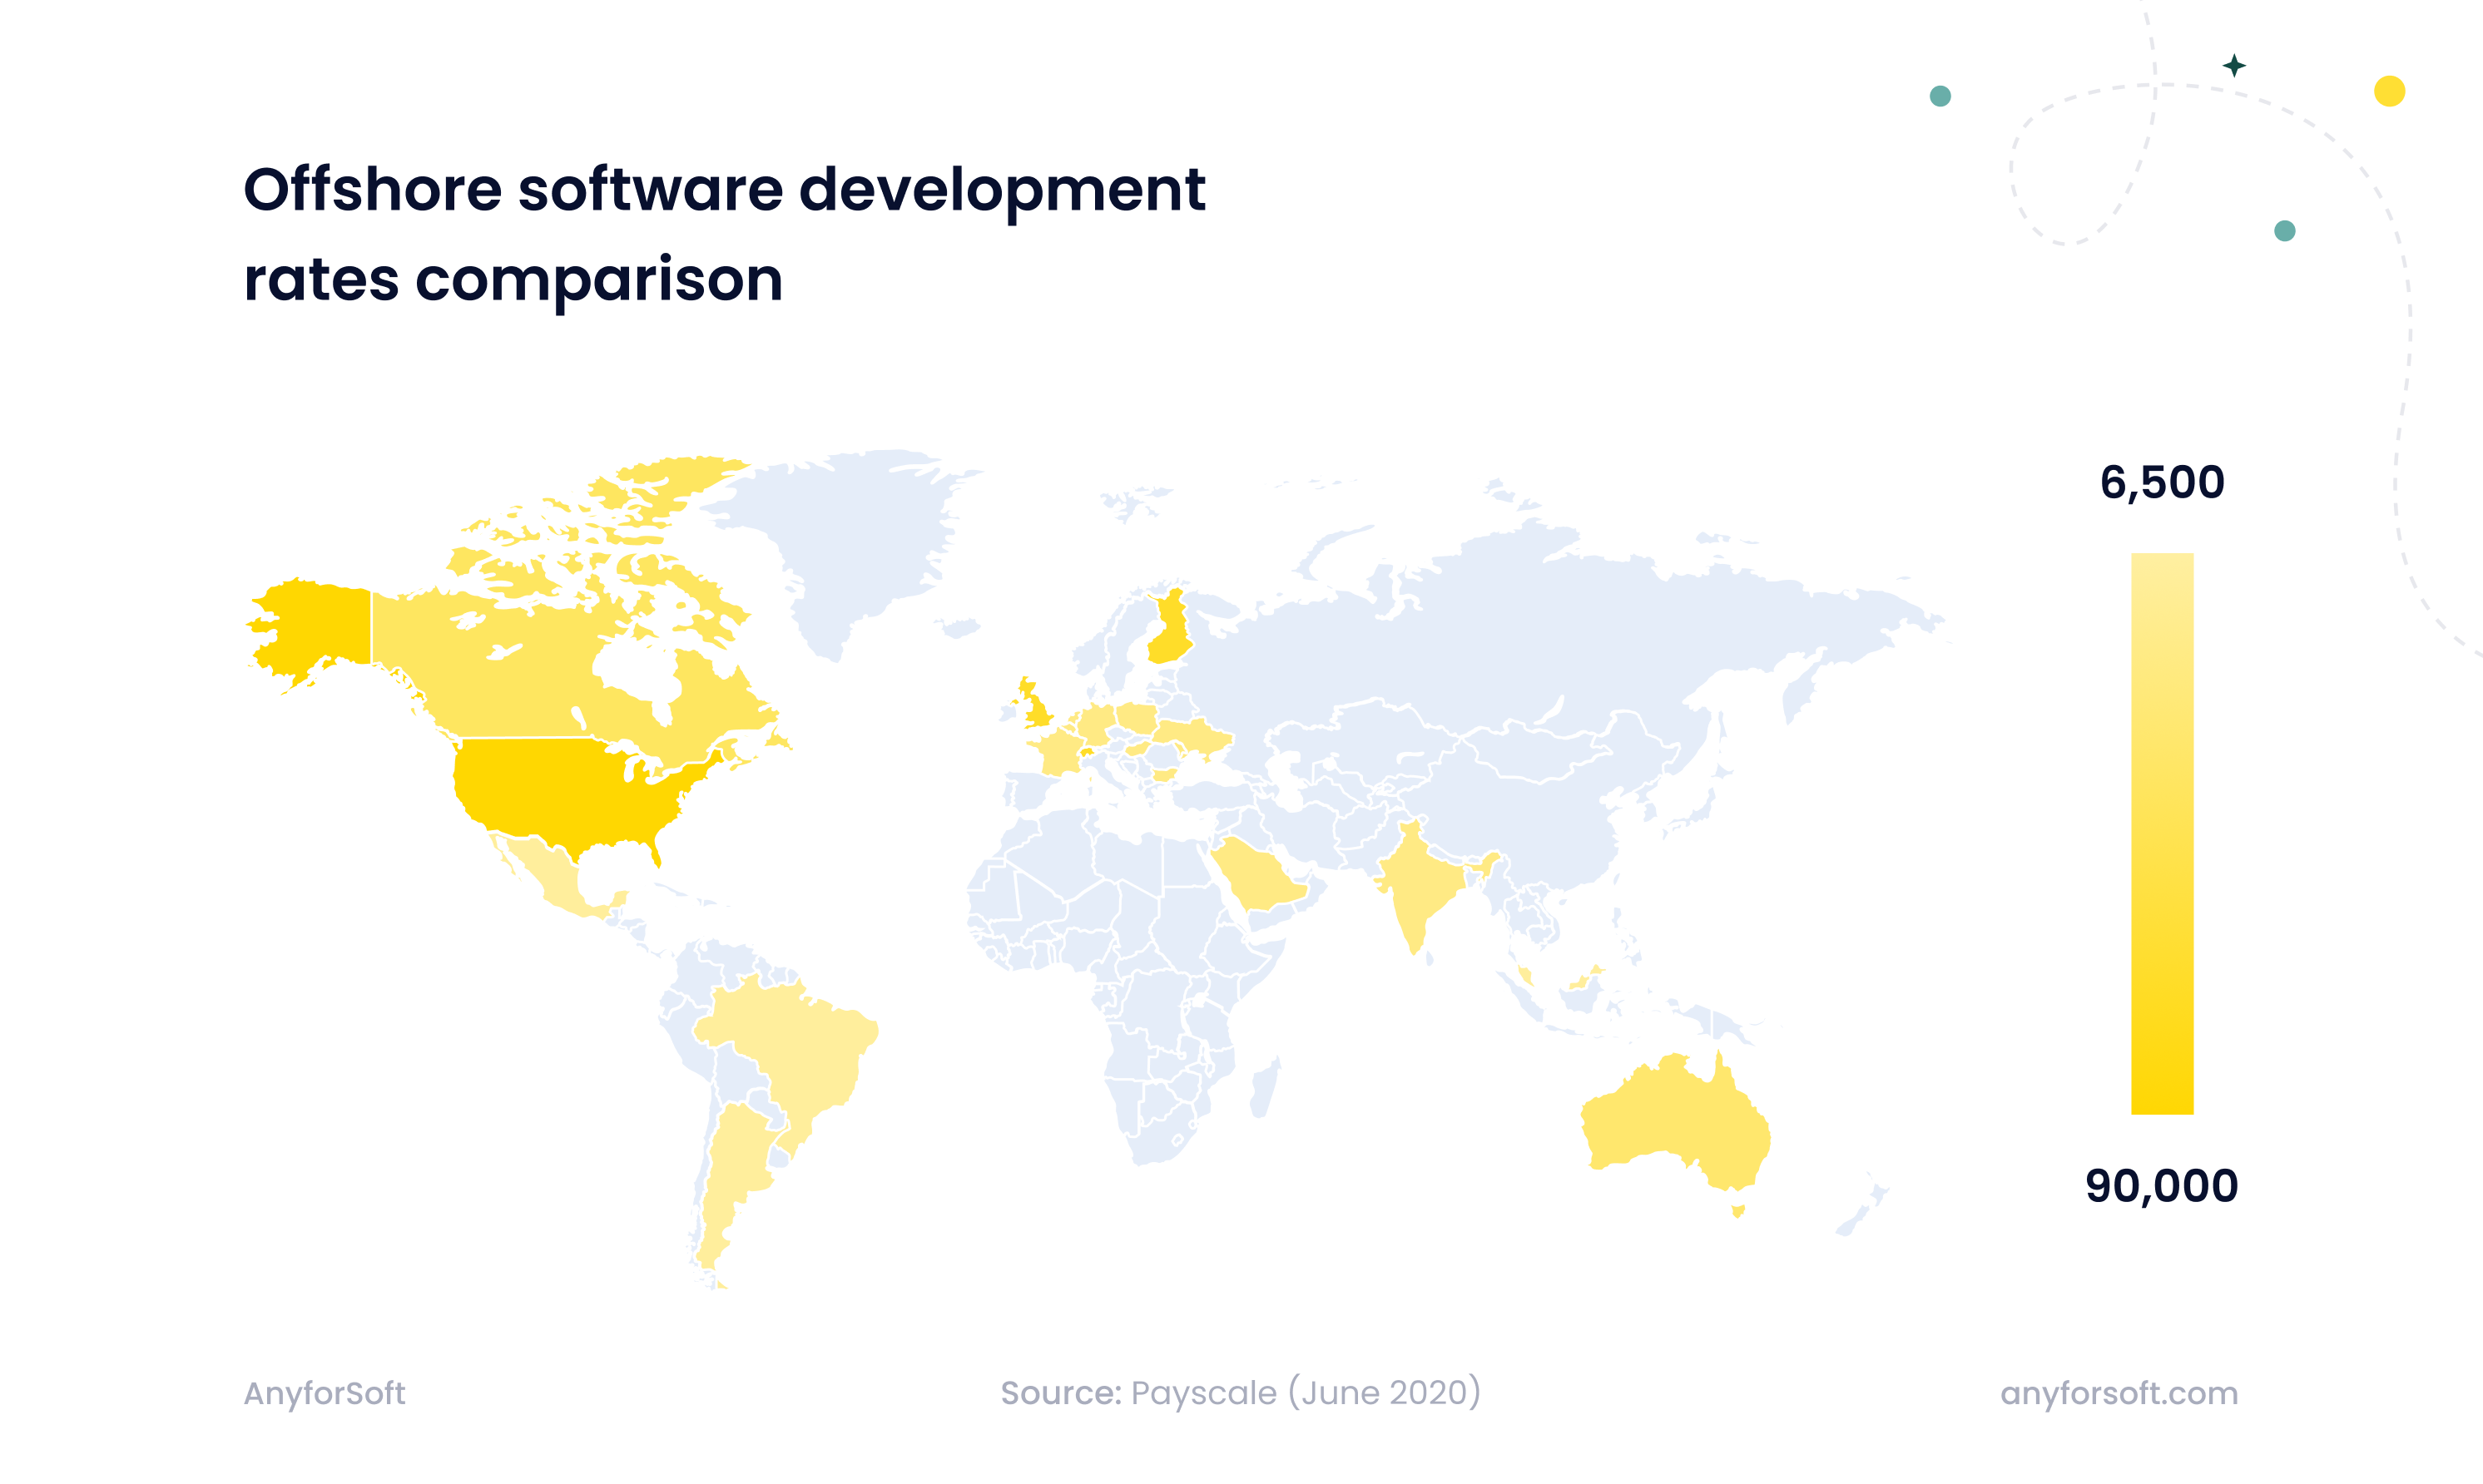 Offshore software development rates comparison